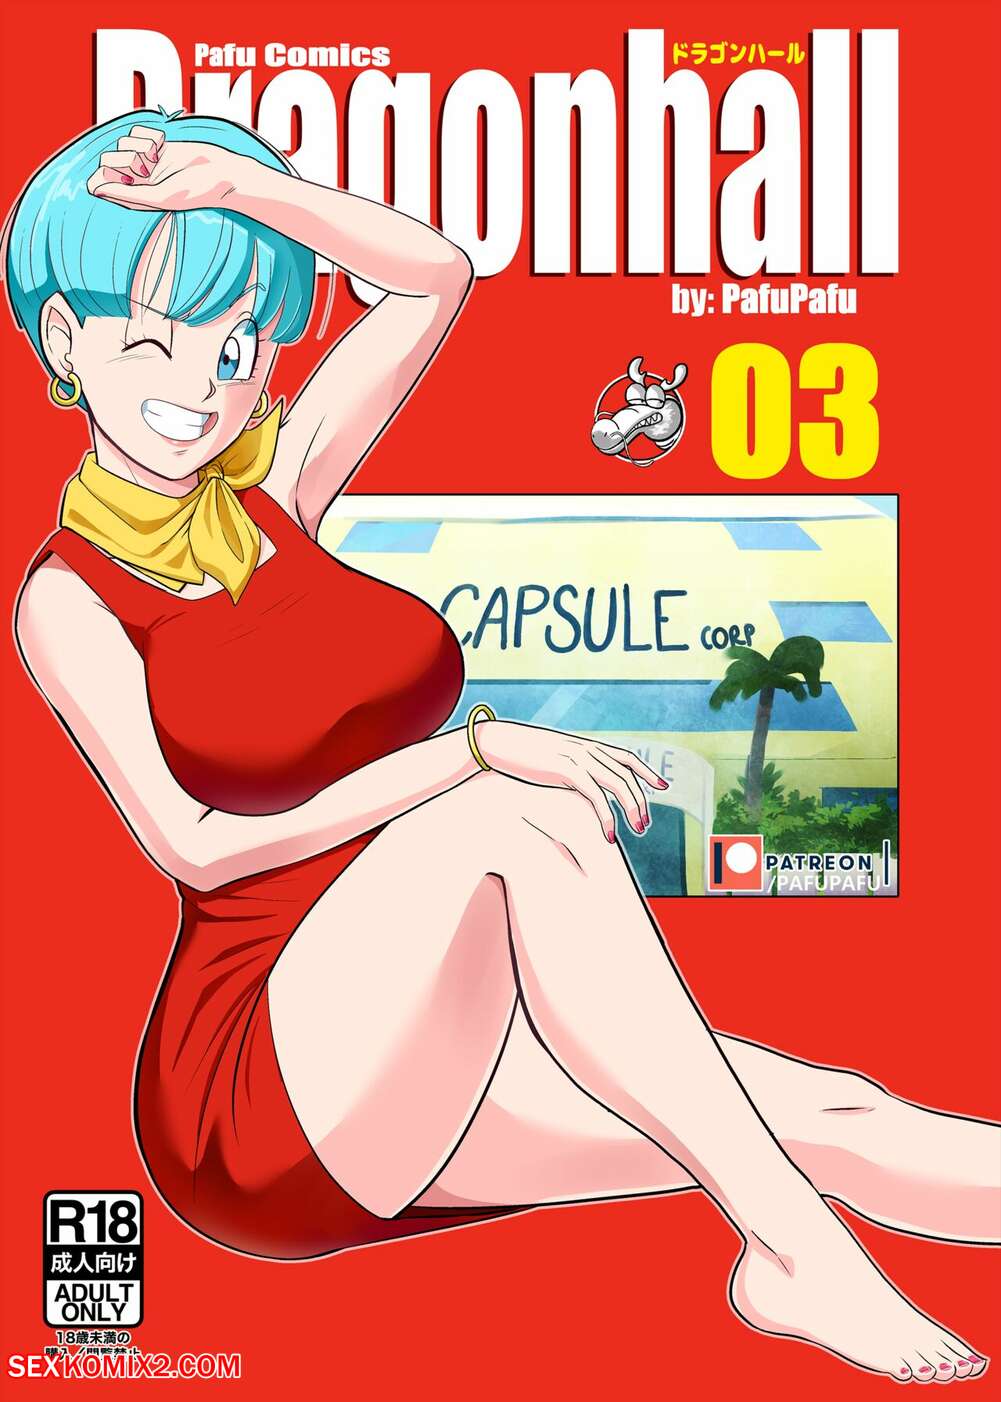 Dbz Bulma Sex - âœ…ï¸ Porn comic Gohan vs Bulma. Dragon Ball Z. PafuPafu Sex comic beauty MILF  was | Porn comics in English for adults only | sexkomix2.com